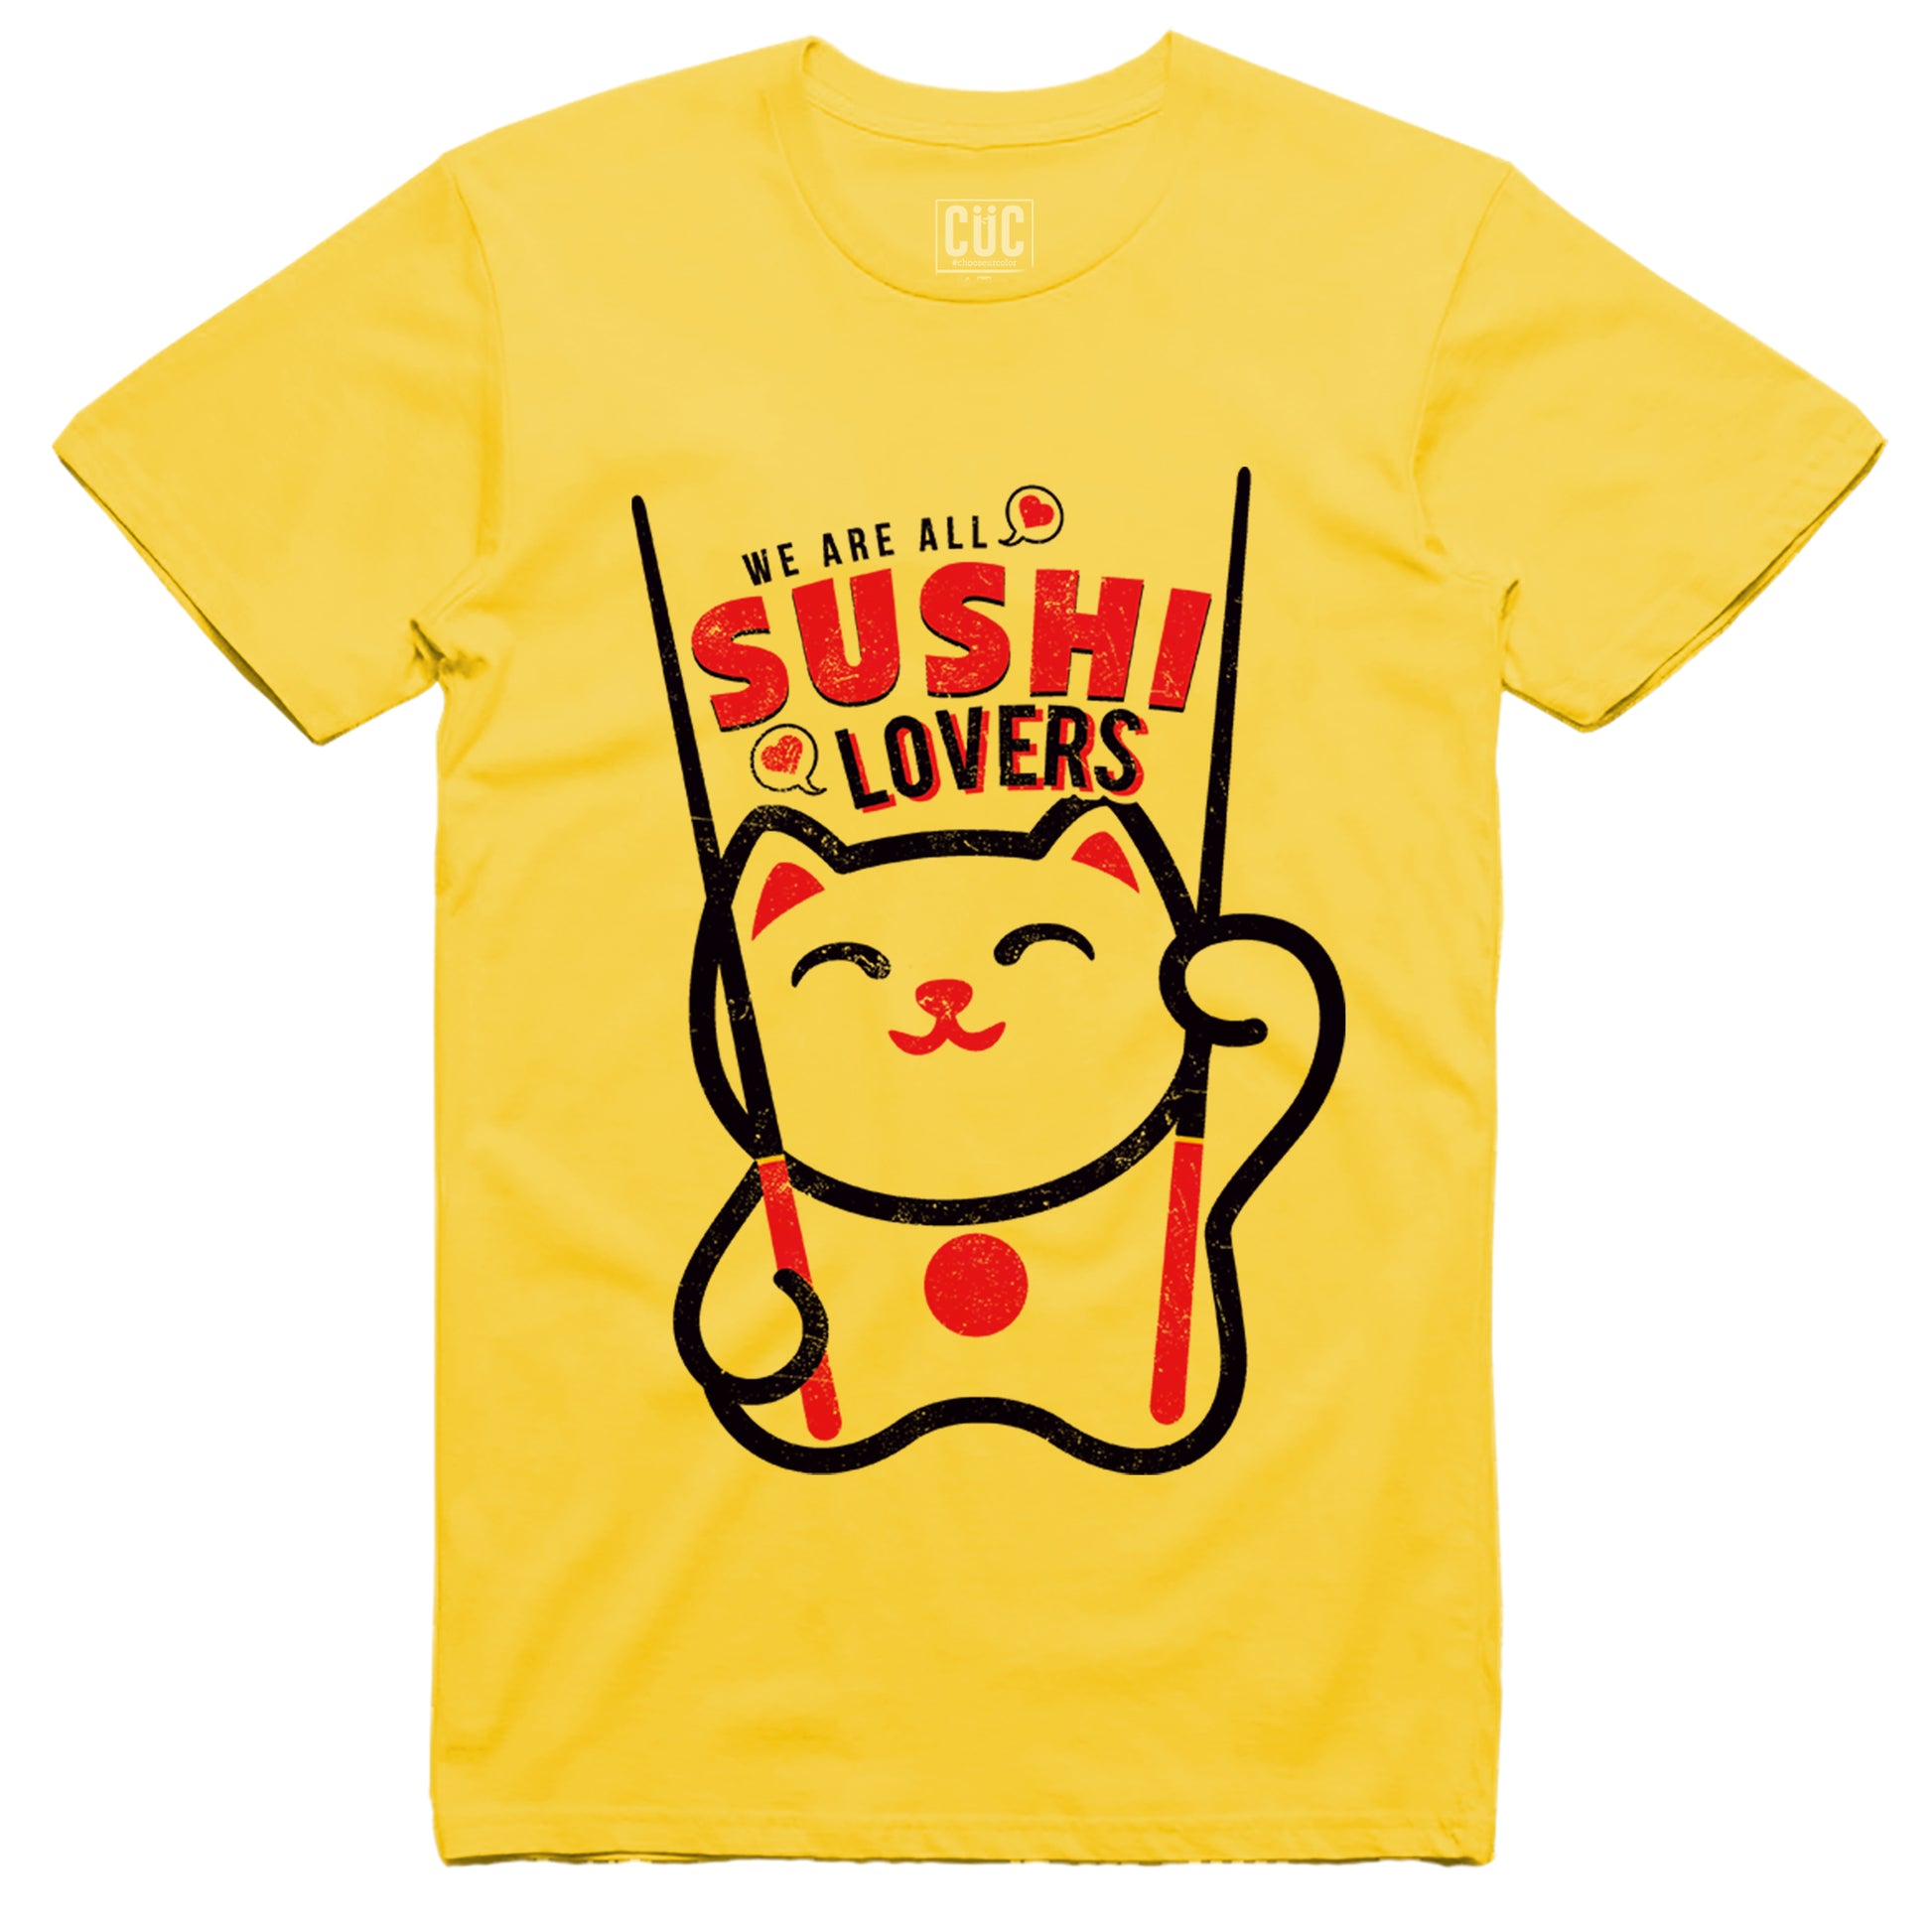 CUC T-Shirt Sushi Lovers Maneki neko - #chooseurcolor - CUC chooseurcolor